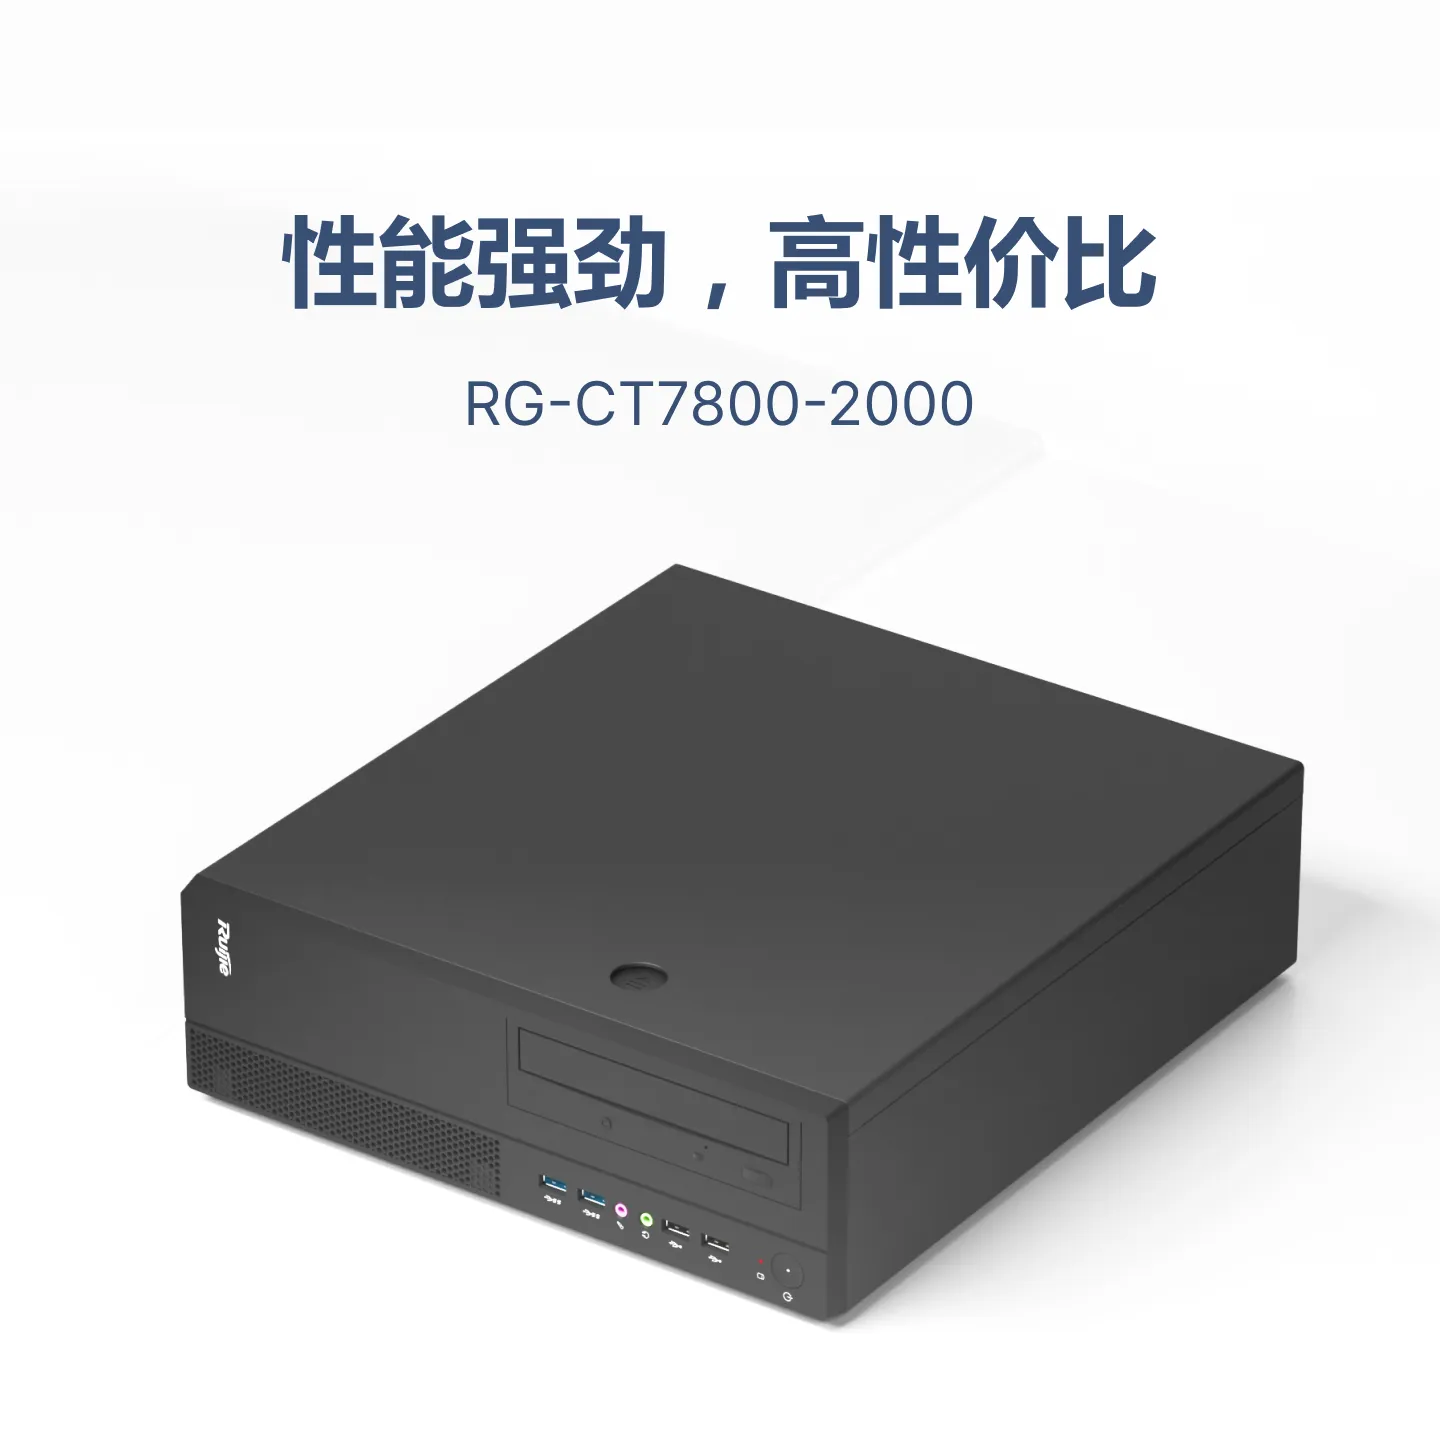 RG-CT7800-2000